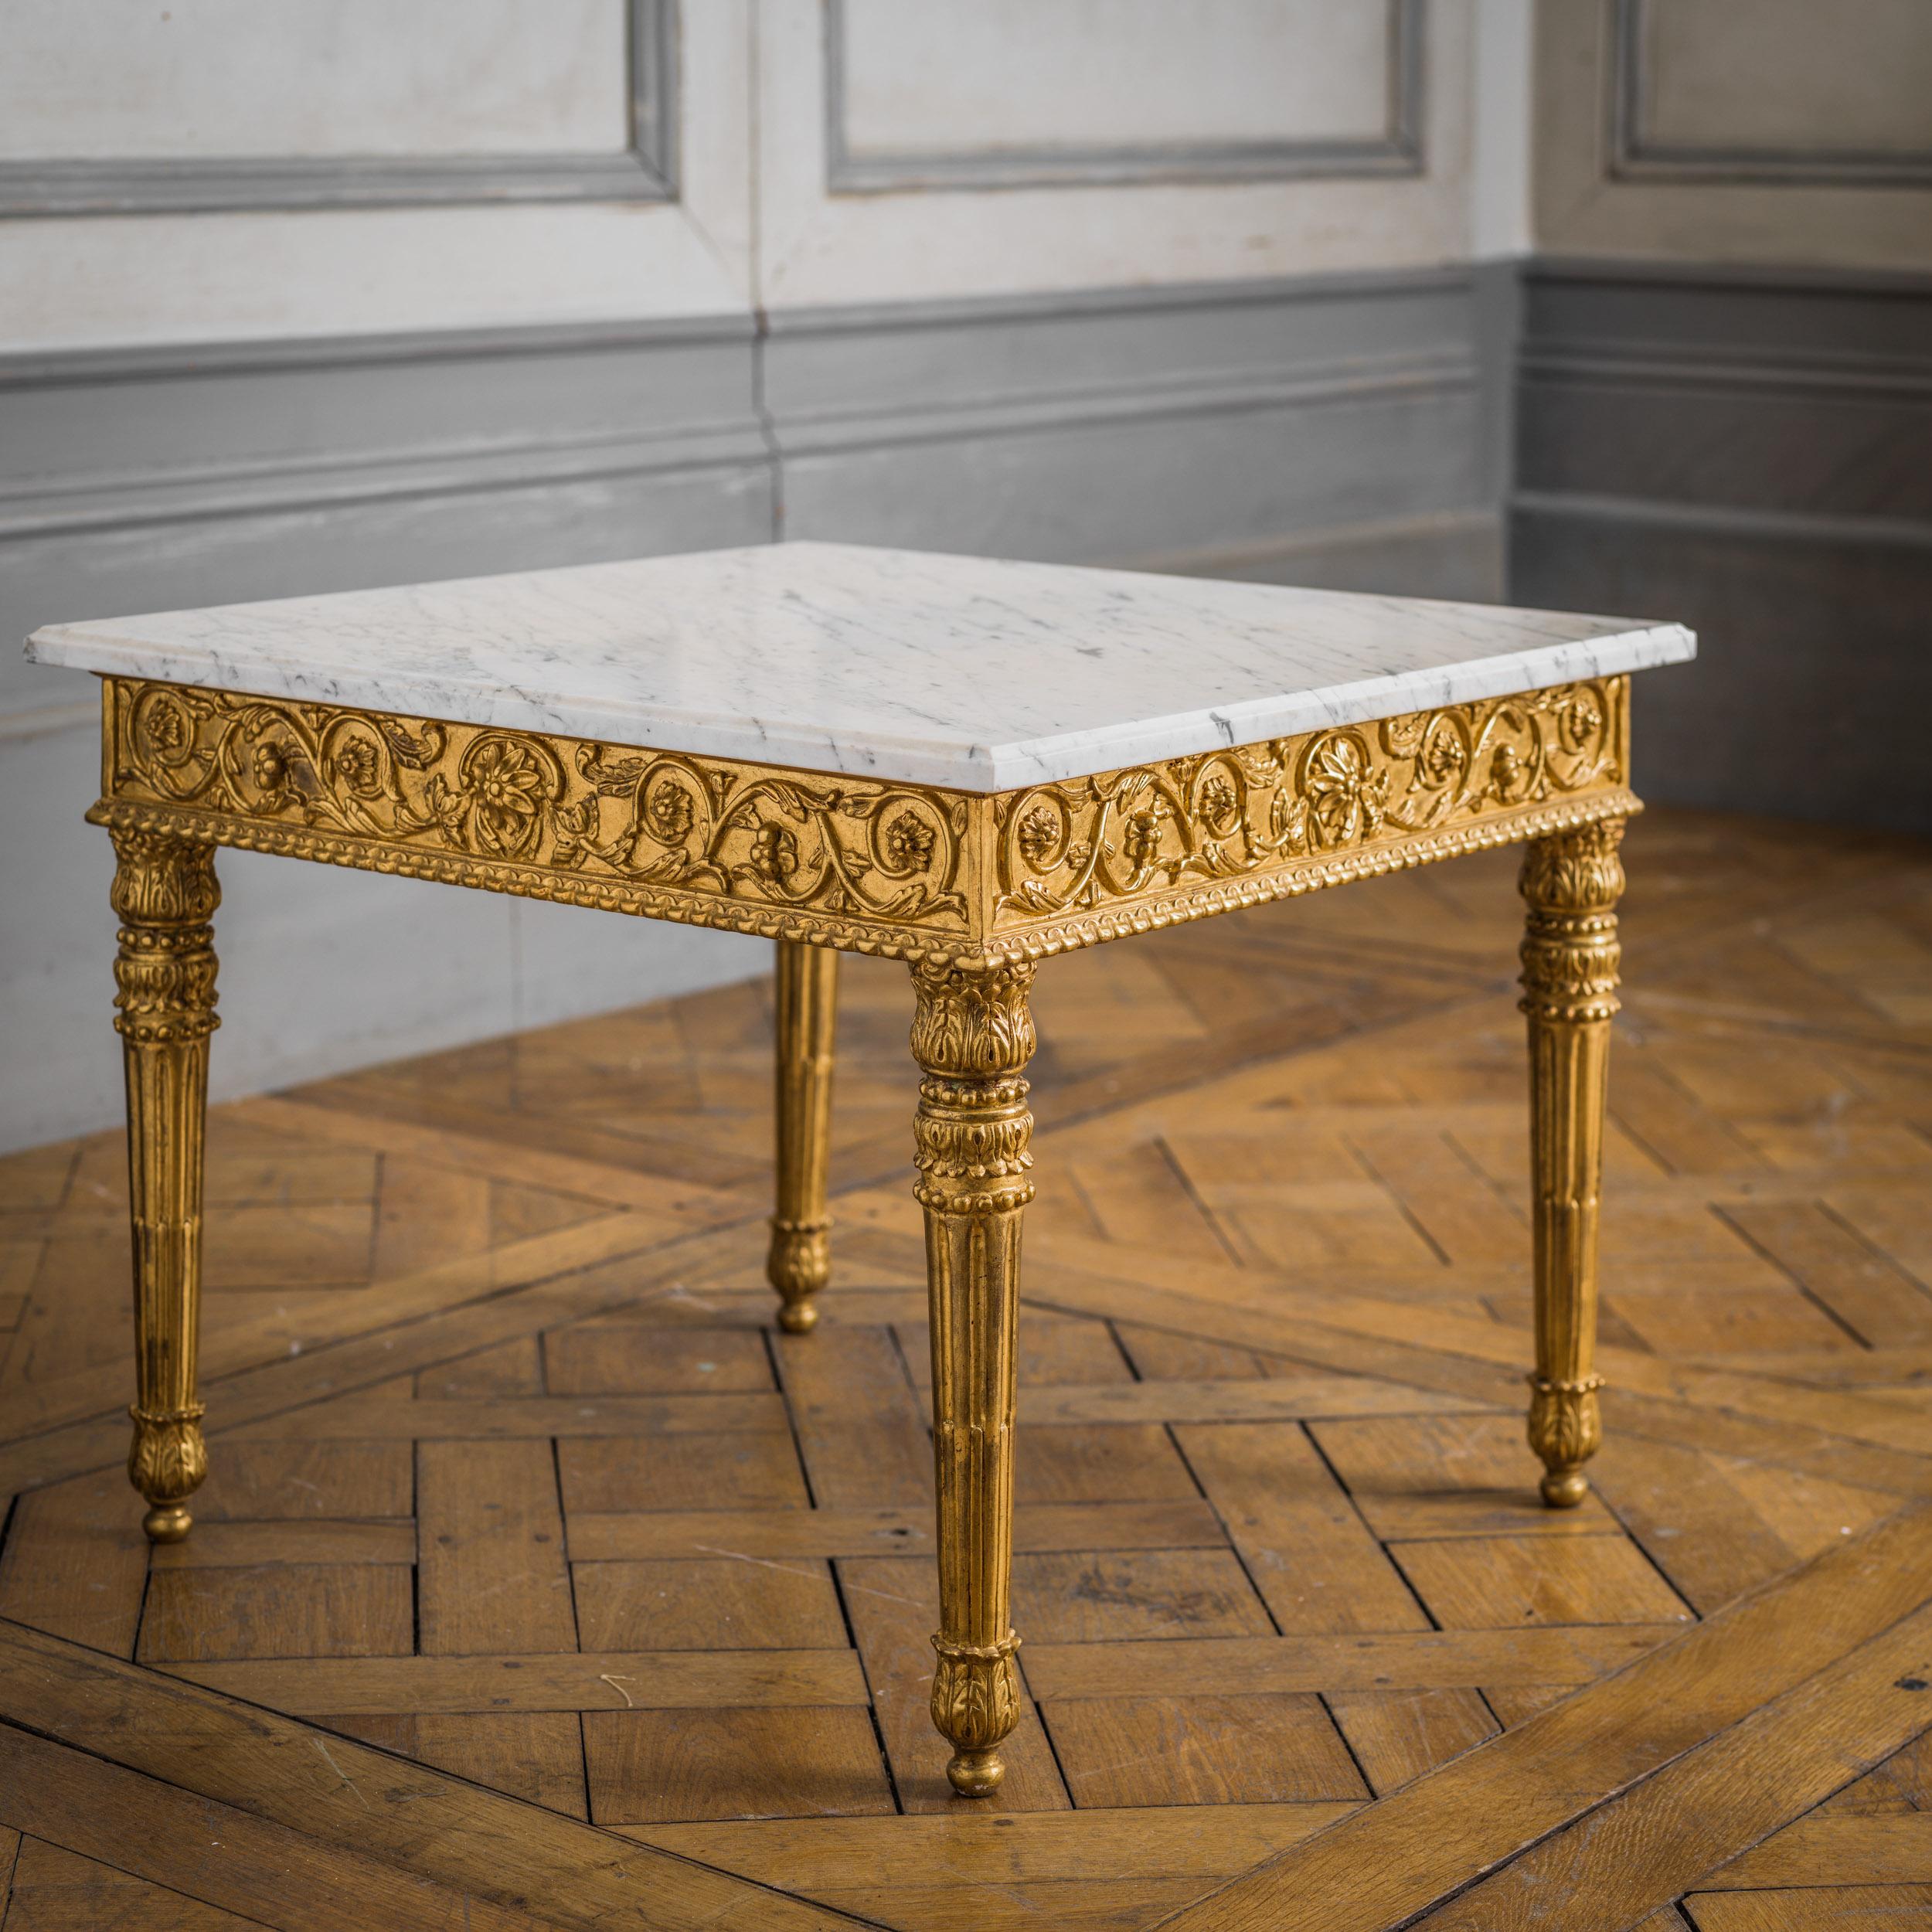 Una mesa de centro de estilo Luis XVI bellamente elaborada y tallada a mano, con finos detalles. Acabado en una pátina envejecida y dorada a mano, con una encimera biselada de mármol de Carrara. Otros tamaños disponibles. Fabricado por maestros del